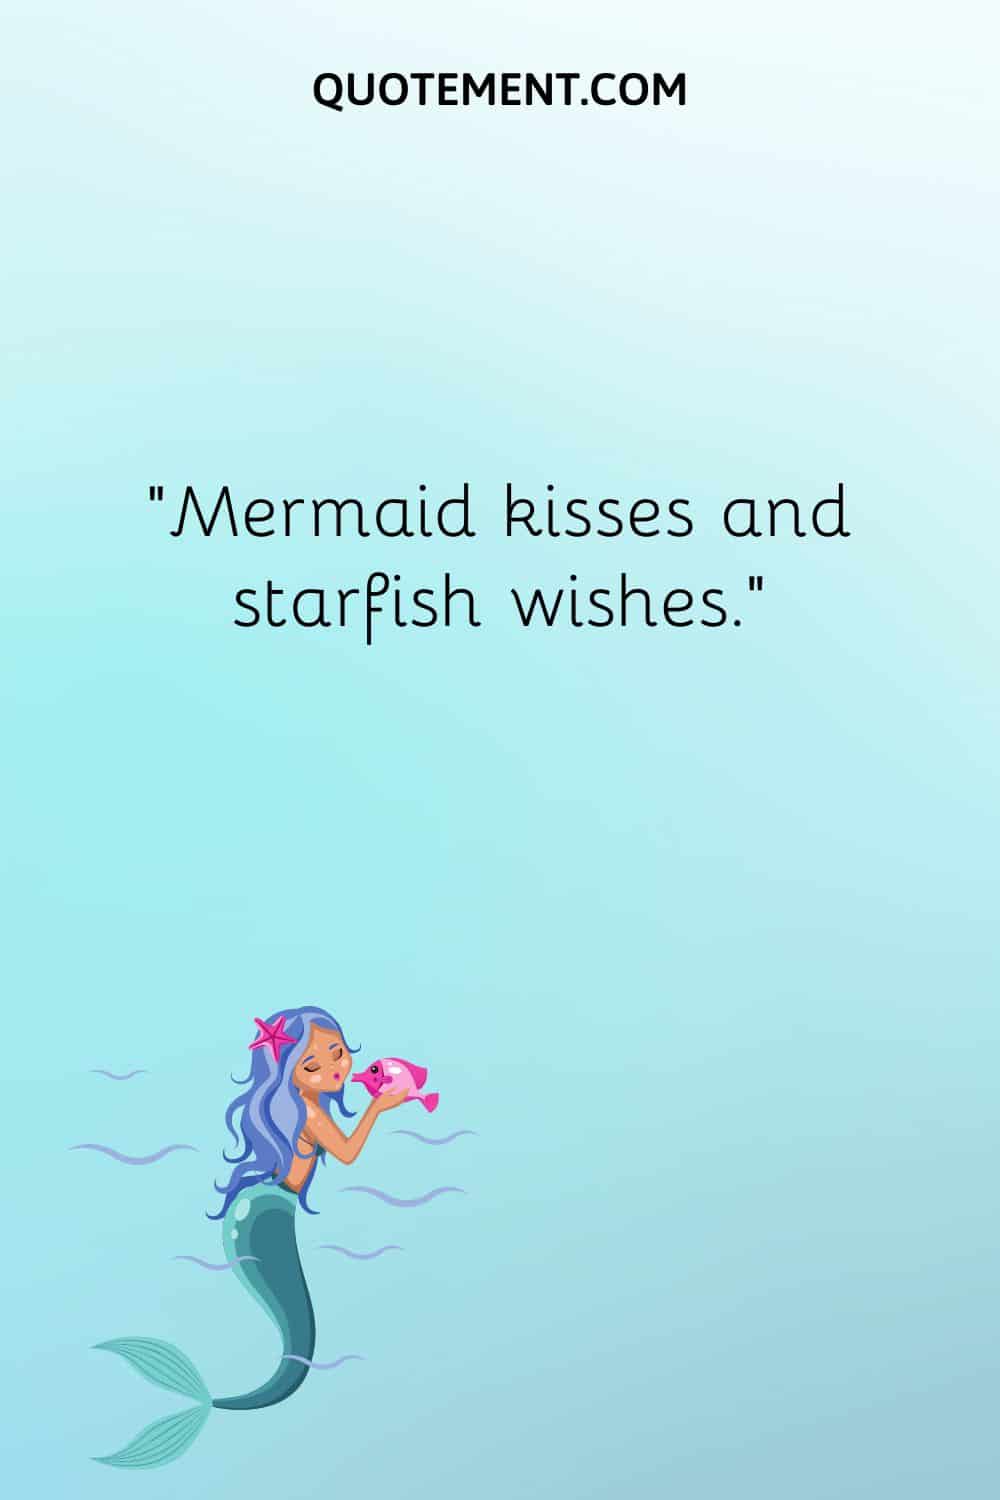 “Mermaid kisses and starfish wishes.”